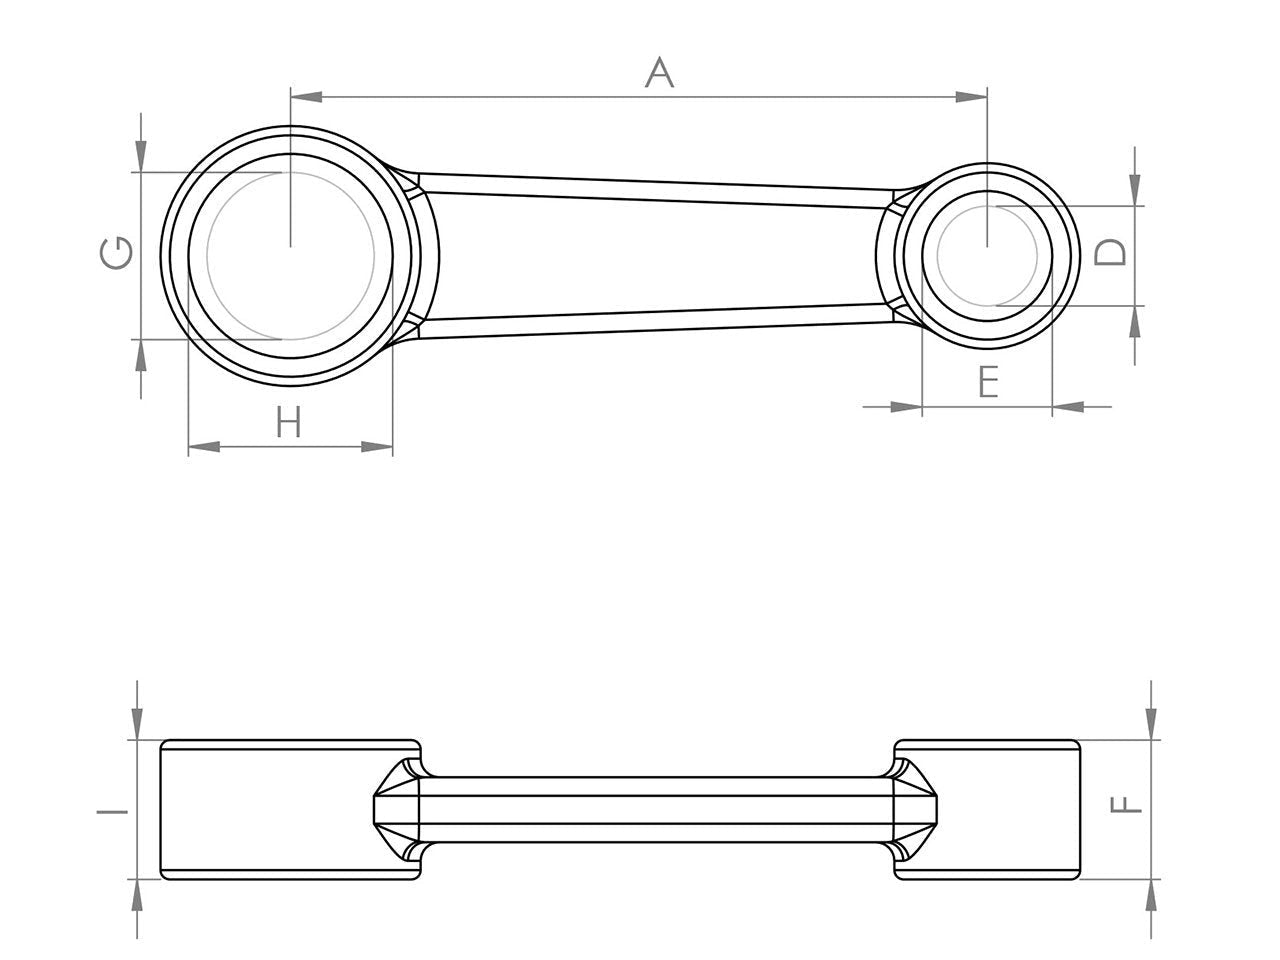 Zeichnung Barikit Pleuel für einen Honda CR 250 Motor mit Bemaßung.